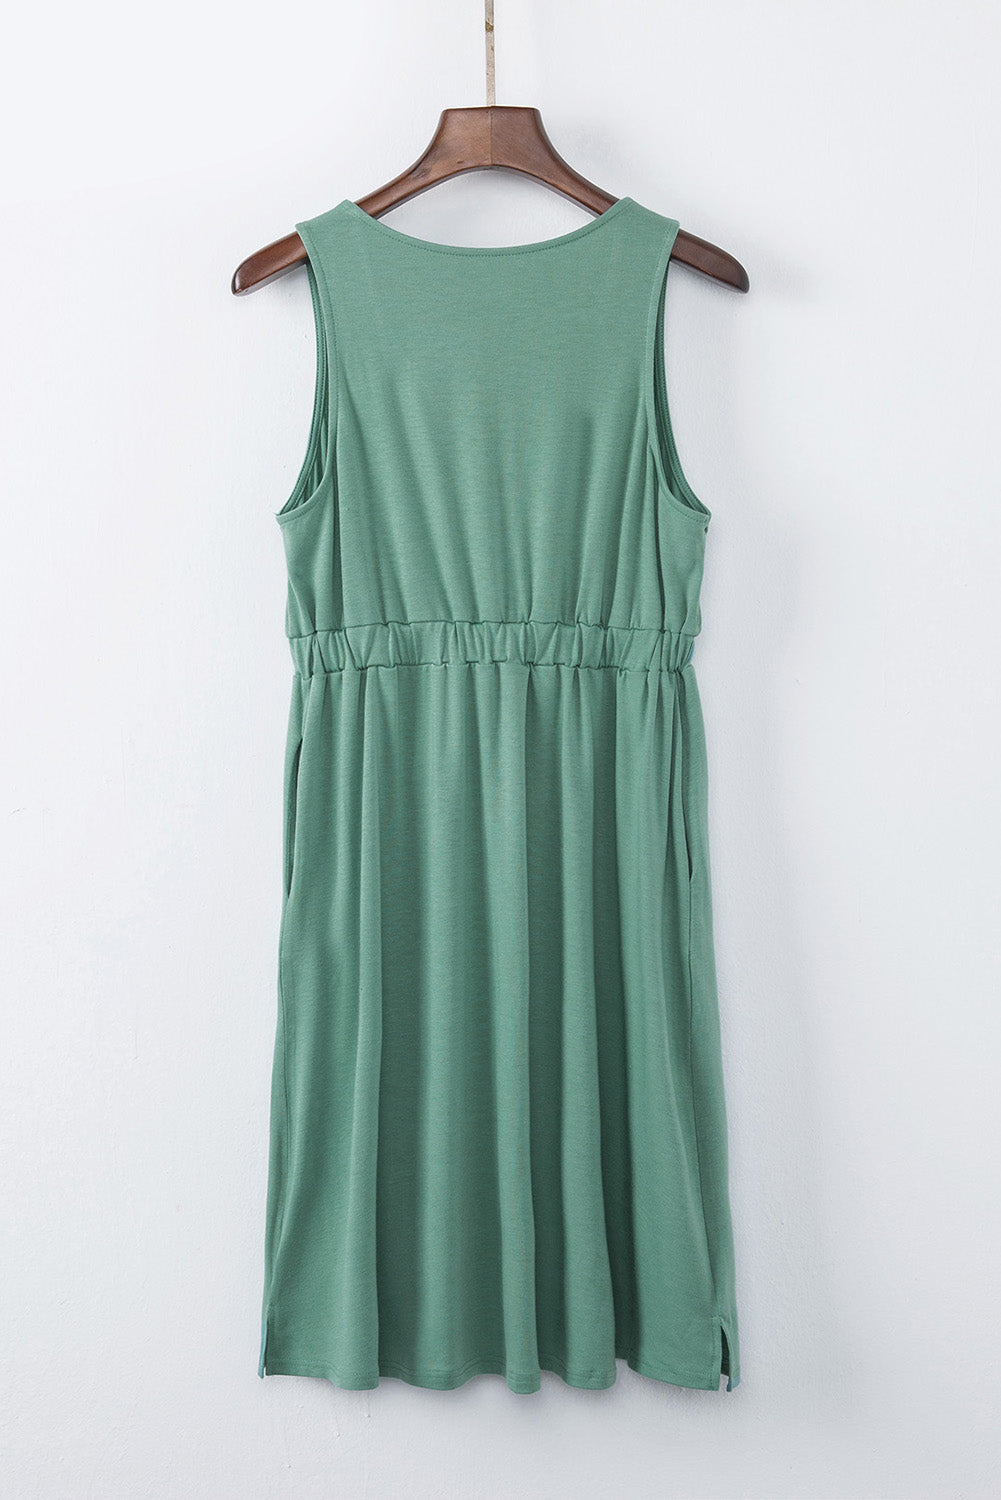 Green Sleeveless Button Front Short Basics Dress